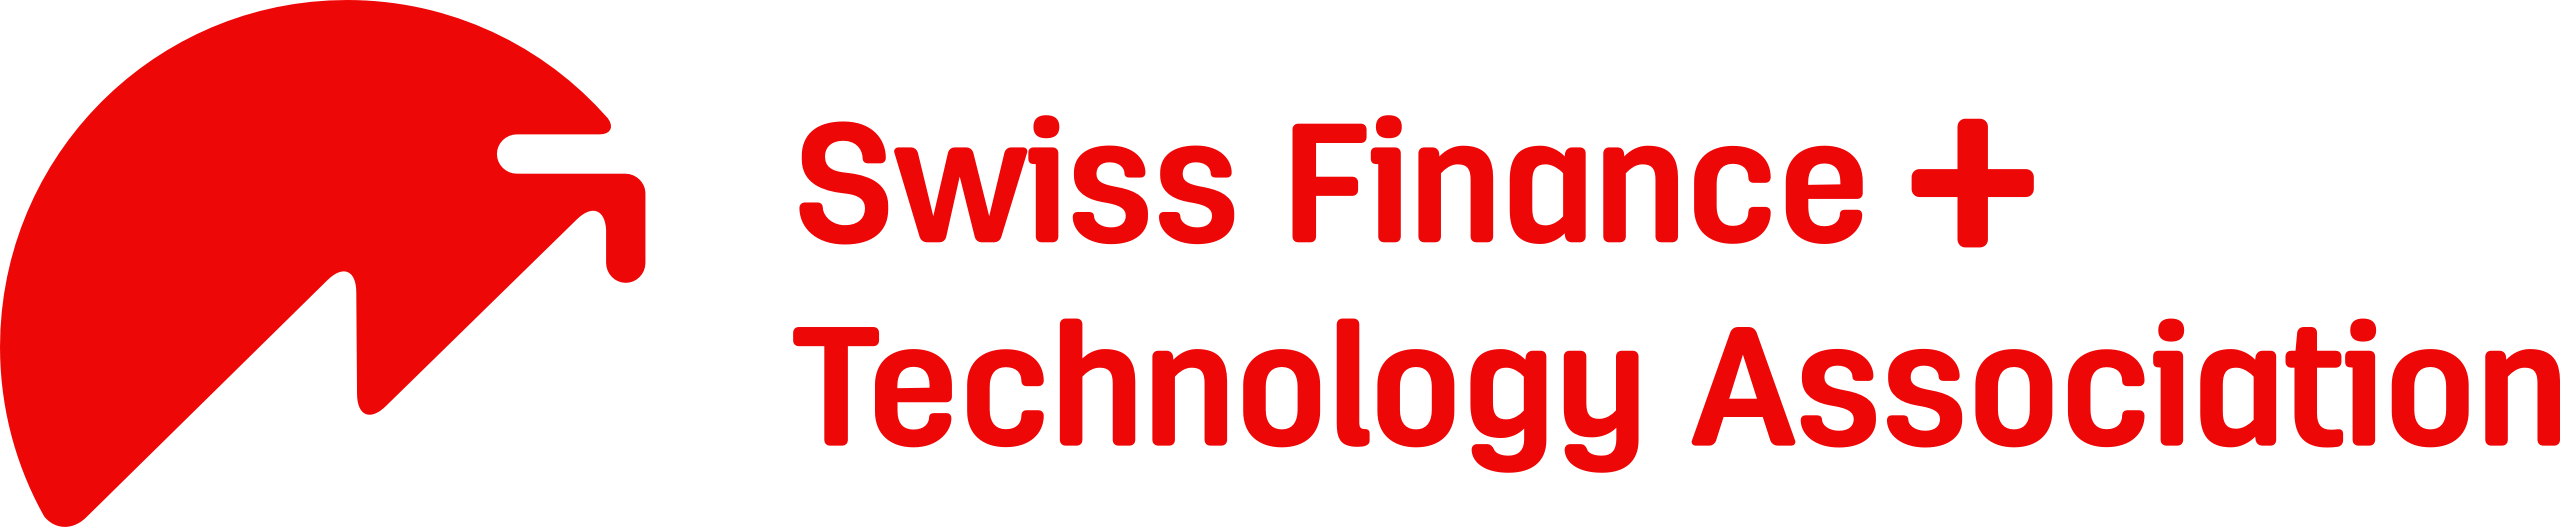 Logo Swiss Finance+Technology Association